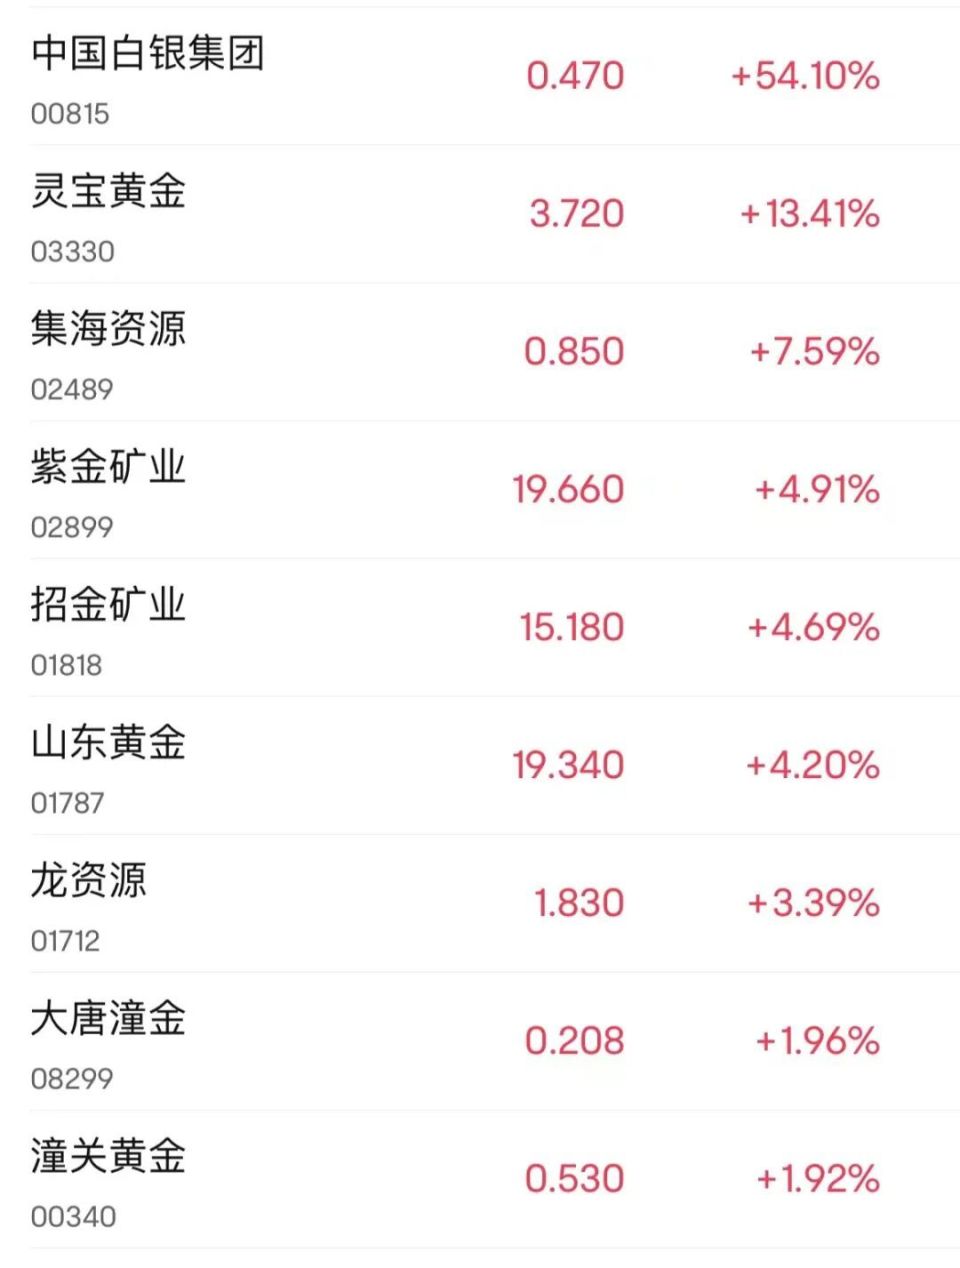 中国白银集团飙涨超54%,中国铝业,江西铜业股份涨超5%,紫金矿业涨近5%